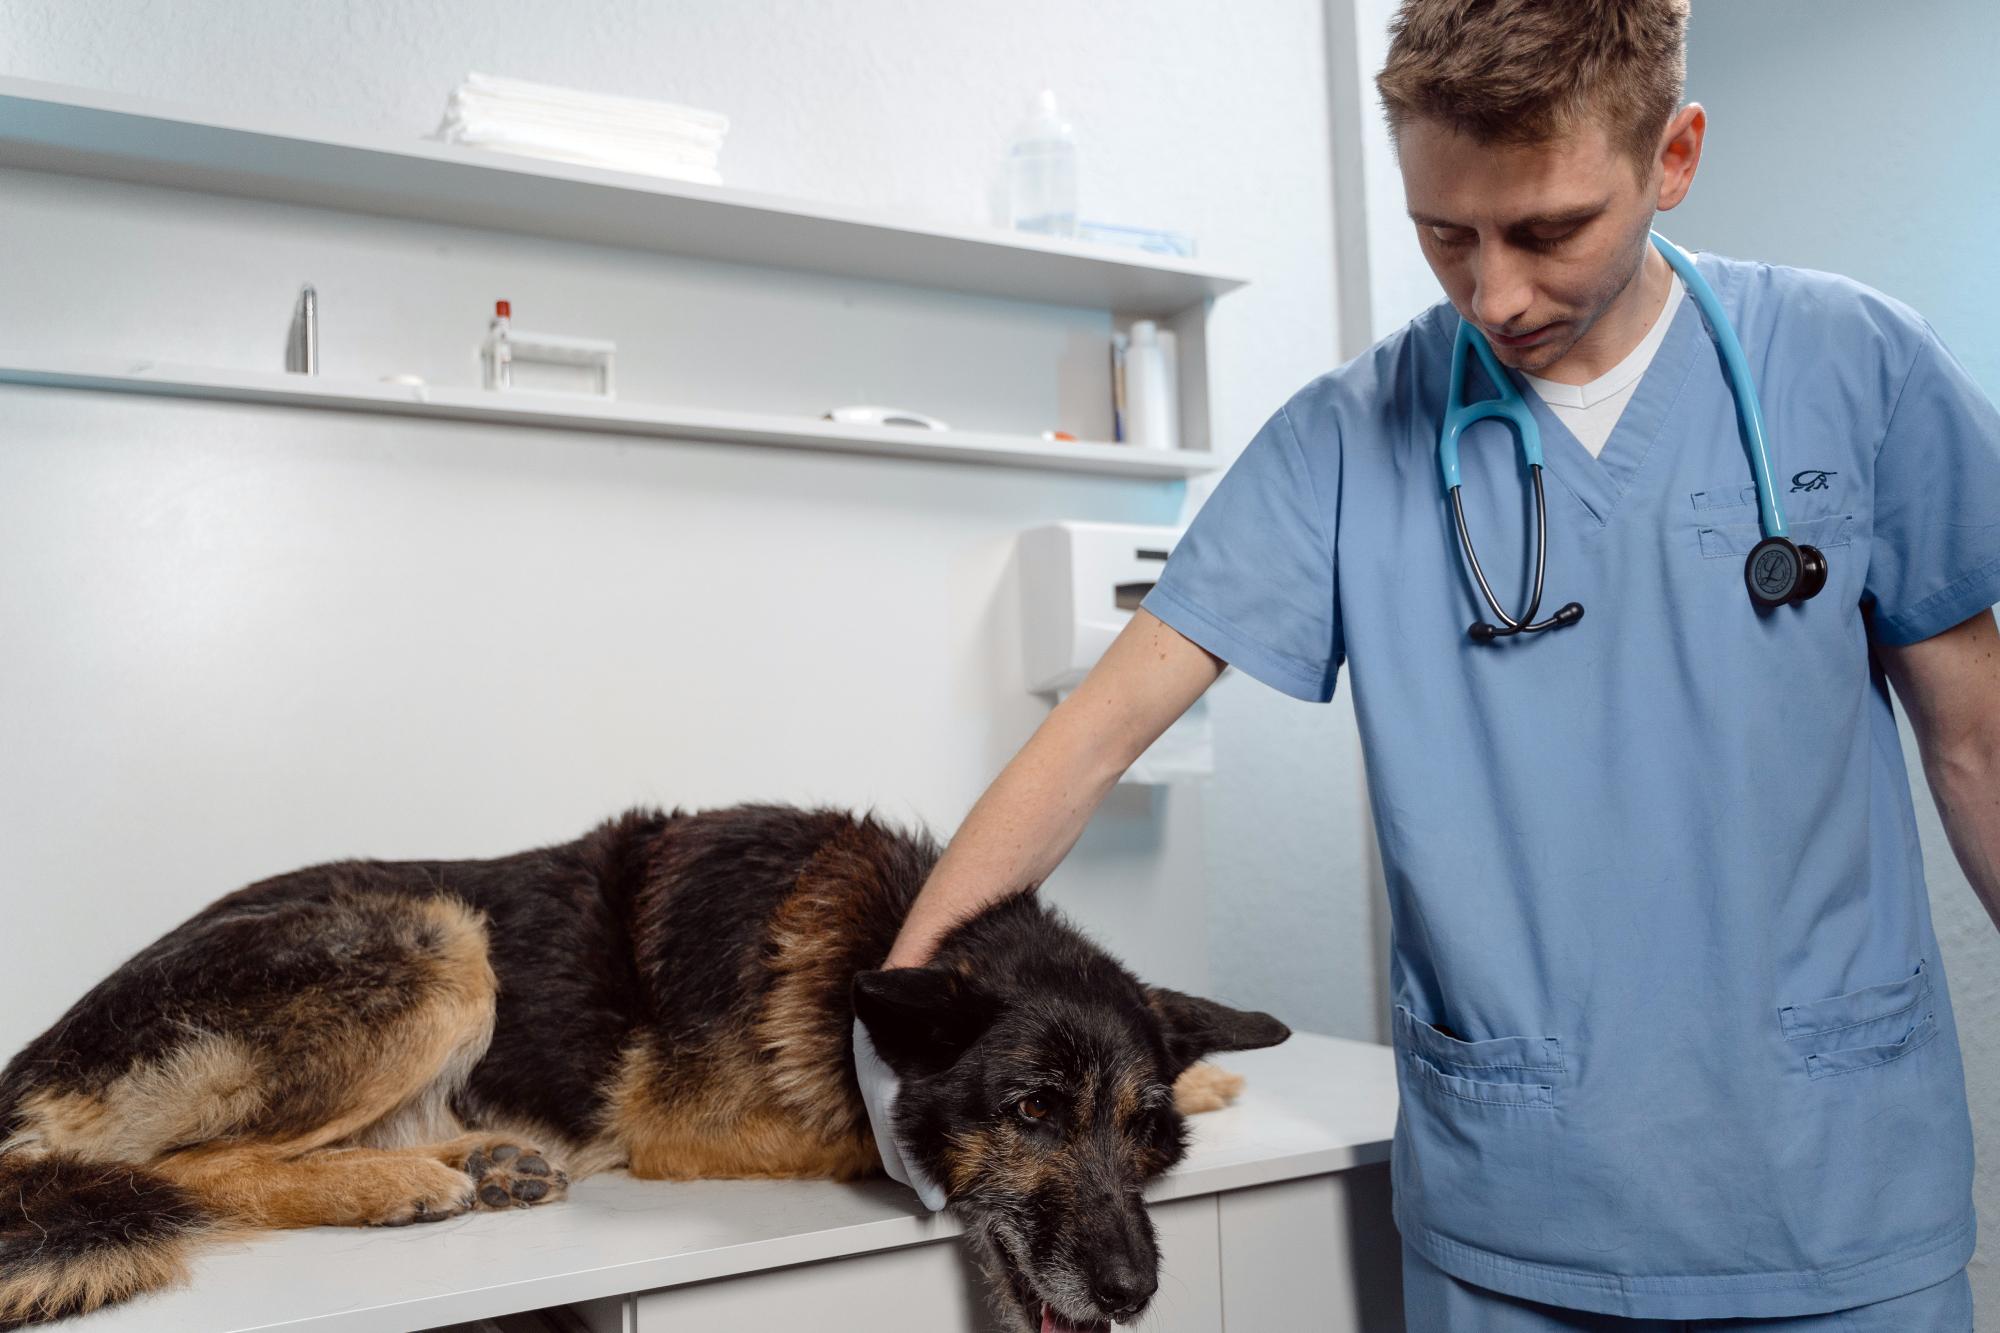 ο κτηνίατρός σας είναι ο καλύτερος σύμμαχός σας, τόσο στην πρόληψη όσο και στη θεραπεία της νόσου (Photograph by Tima Miroshnichenko)